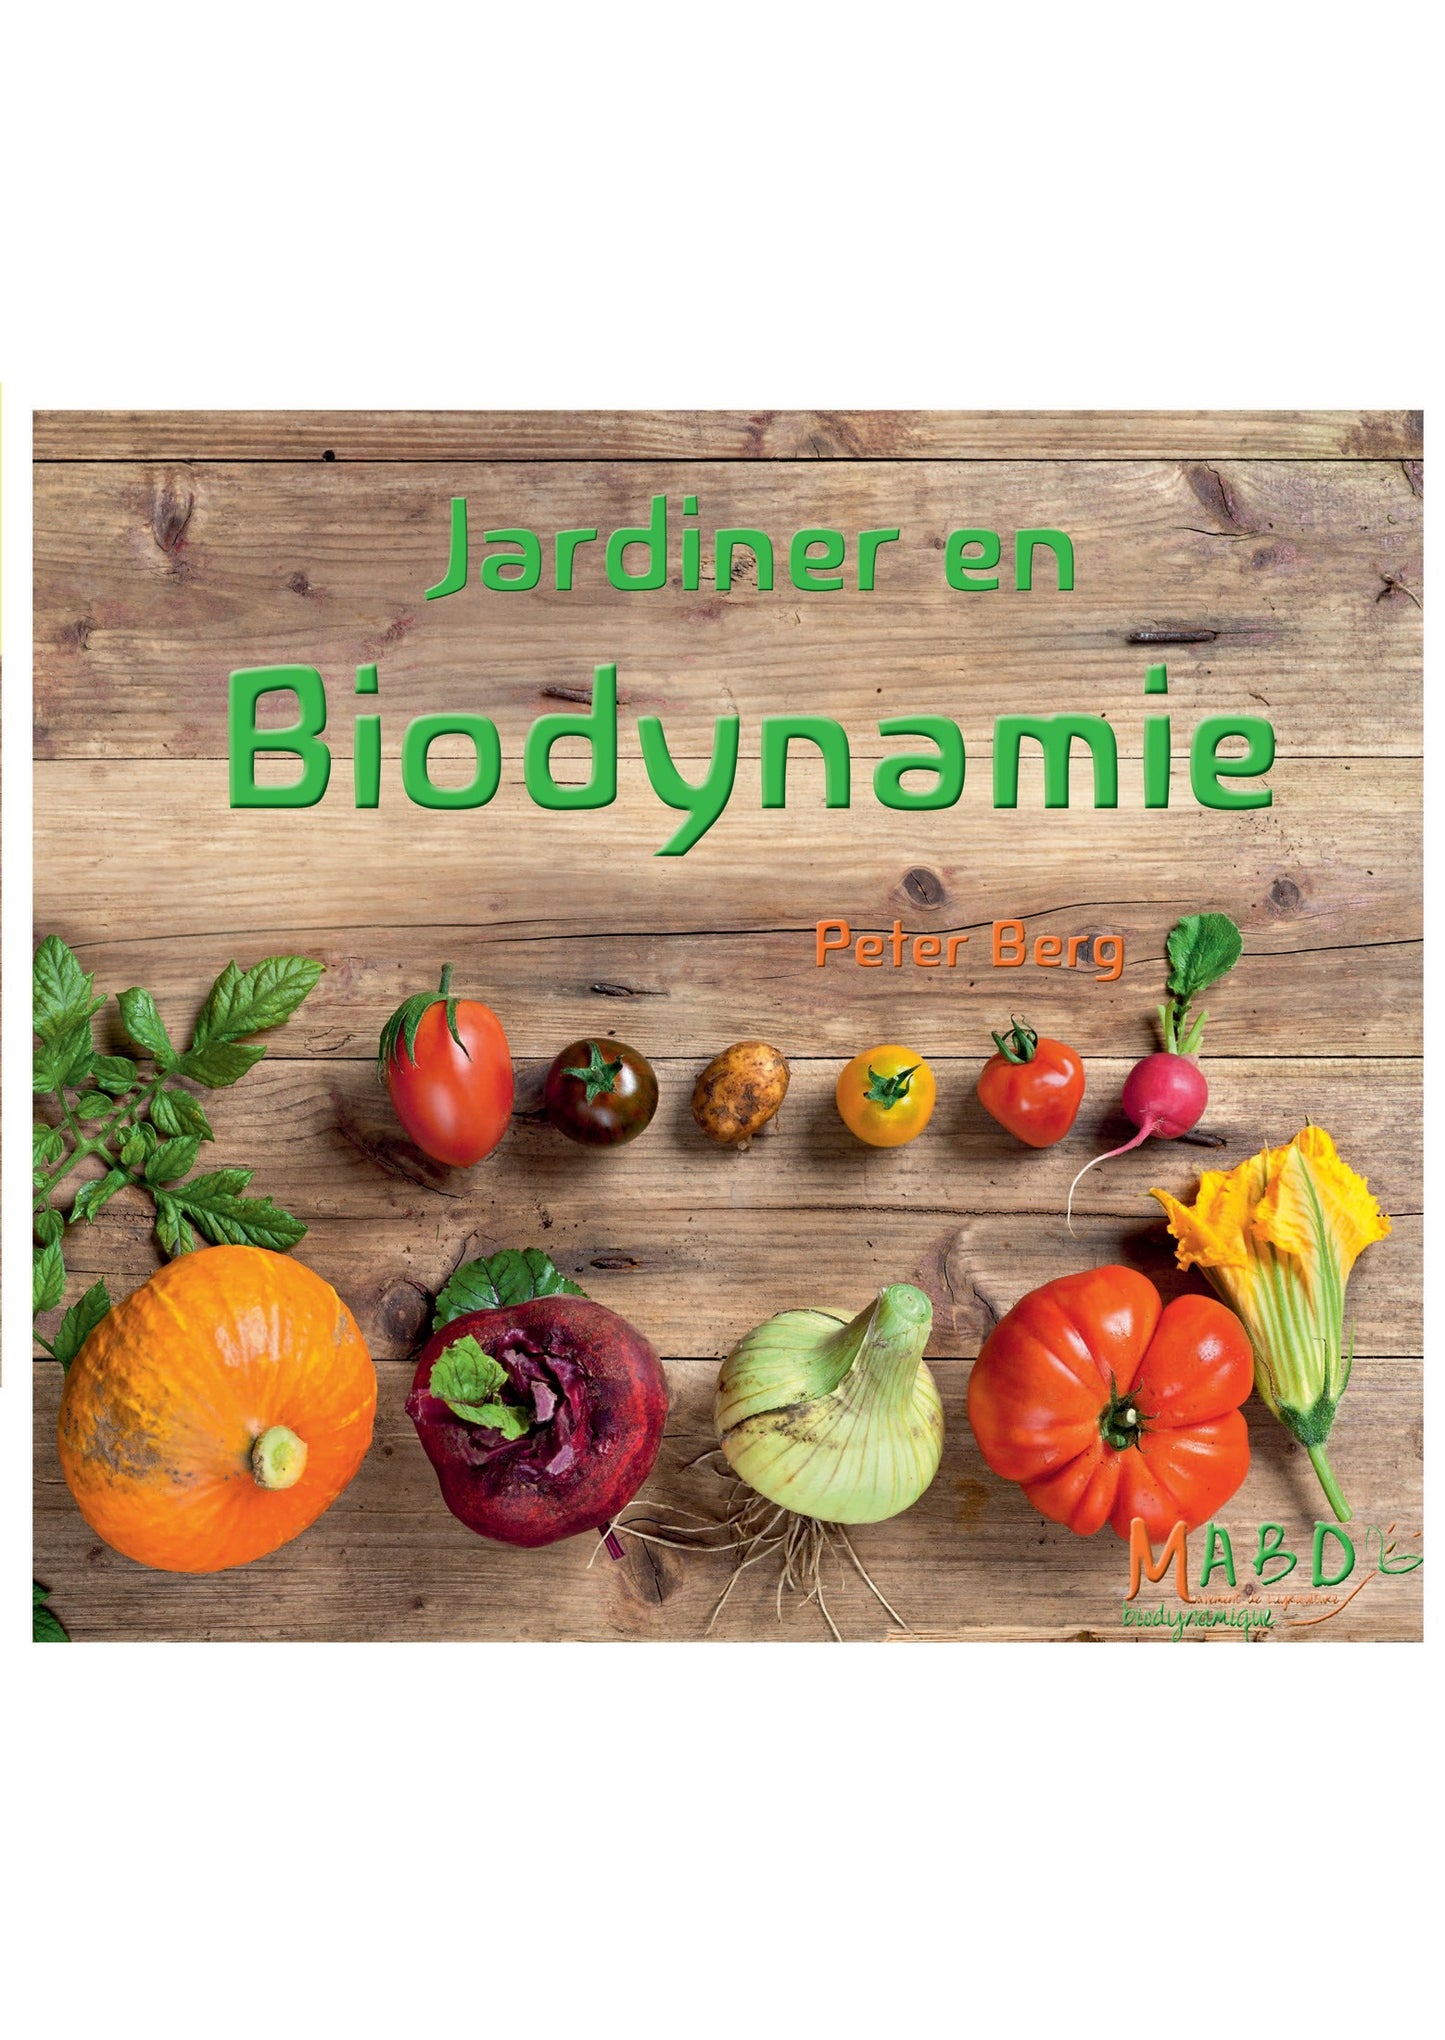 Jardiner en Biodynamie P Berg